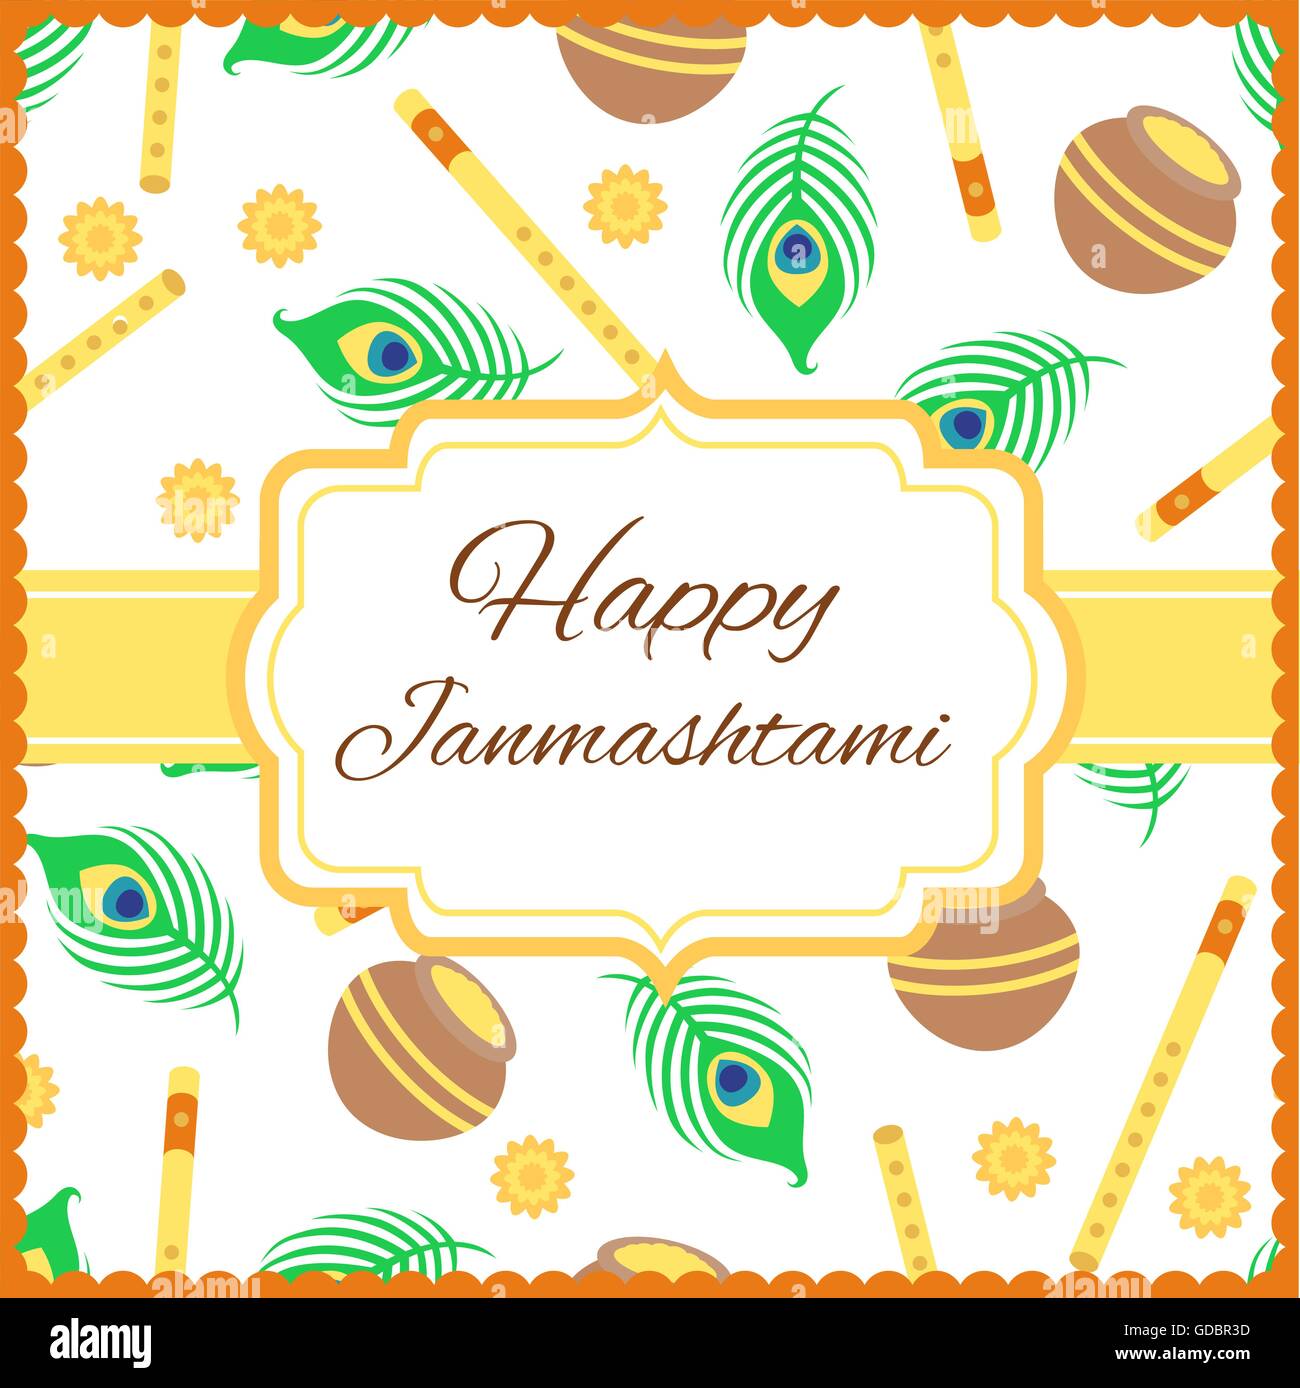 Happy Janmashtami Card With Krishna Flute Isolated On White Stock